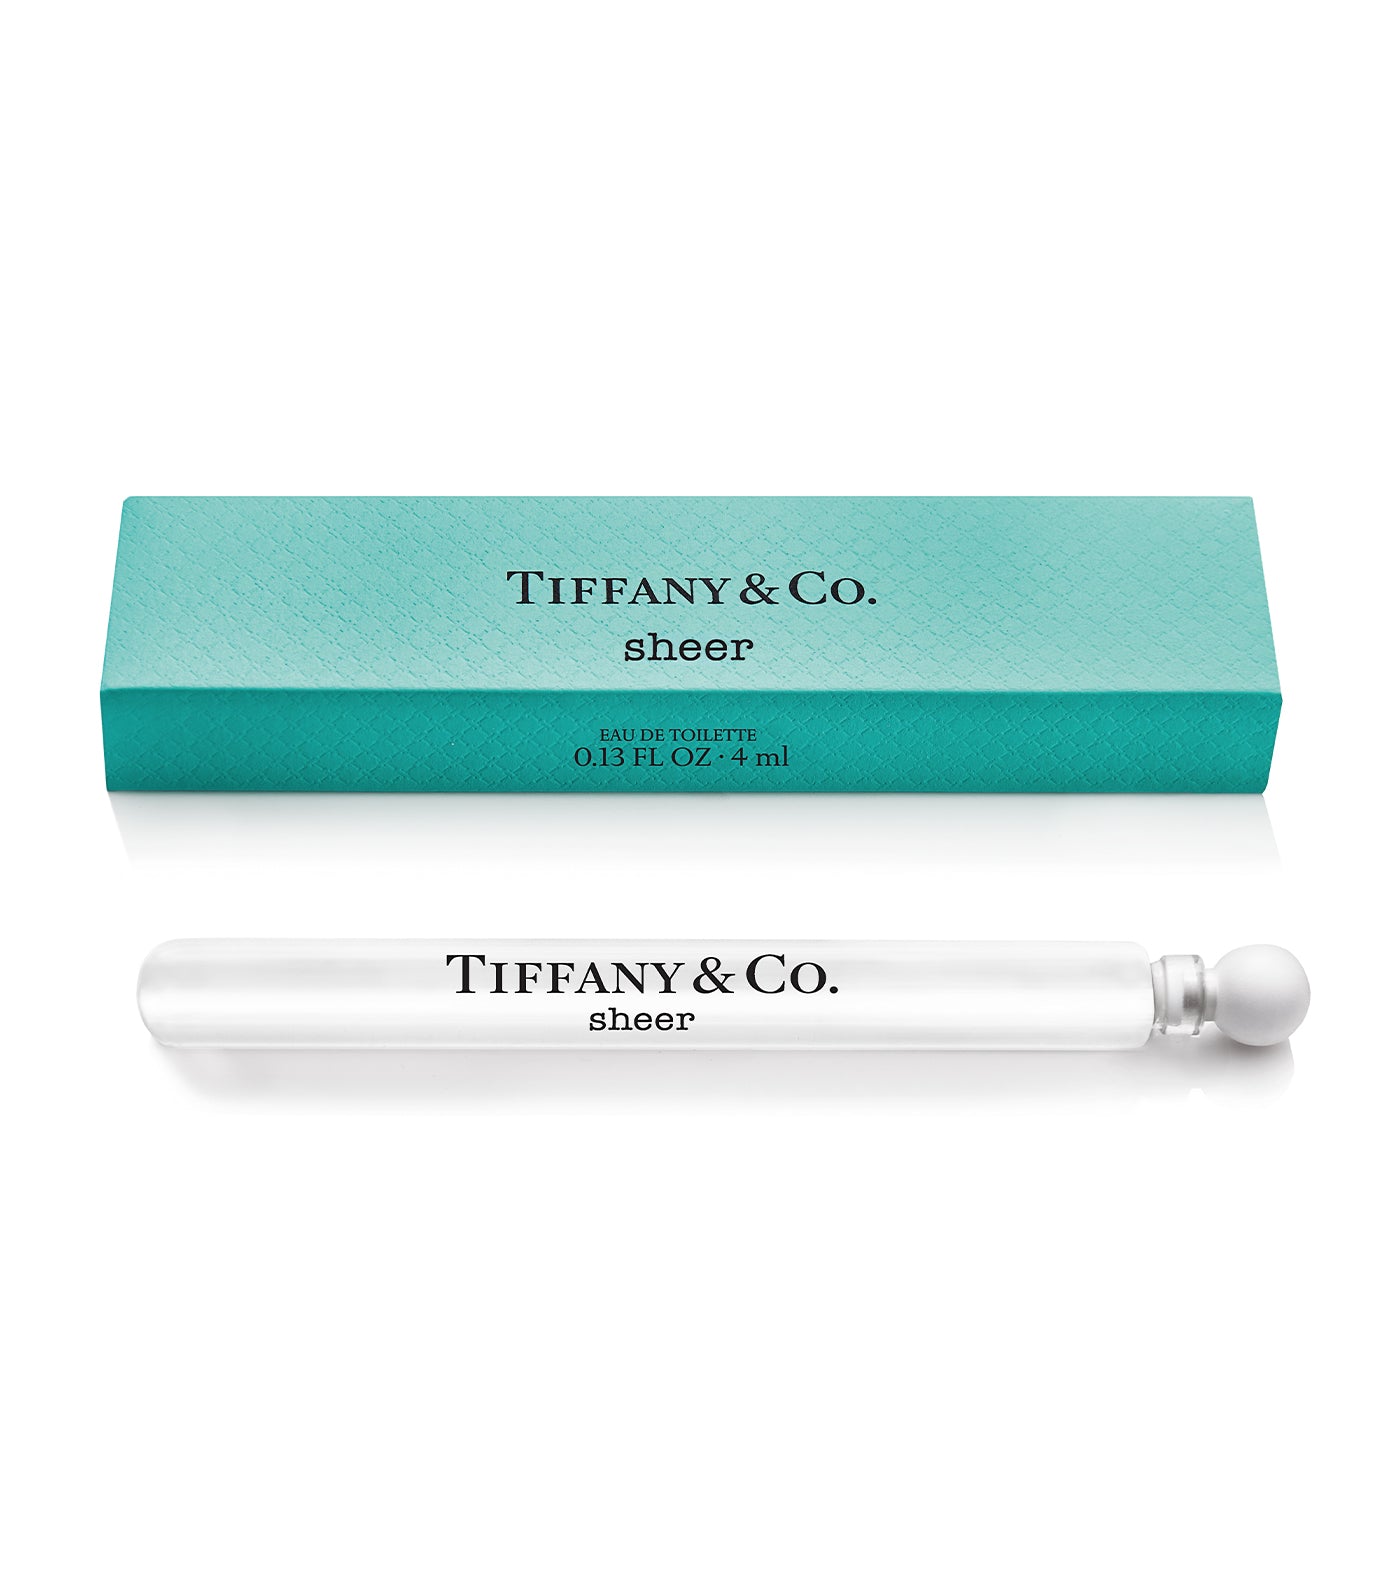 Tiffany & Co. Complimentary Tiffany Sheer Eau de Toilette Mini Vial